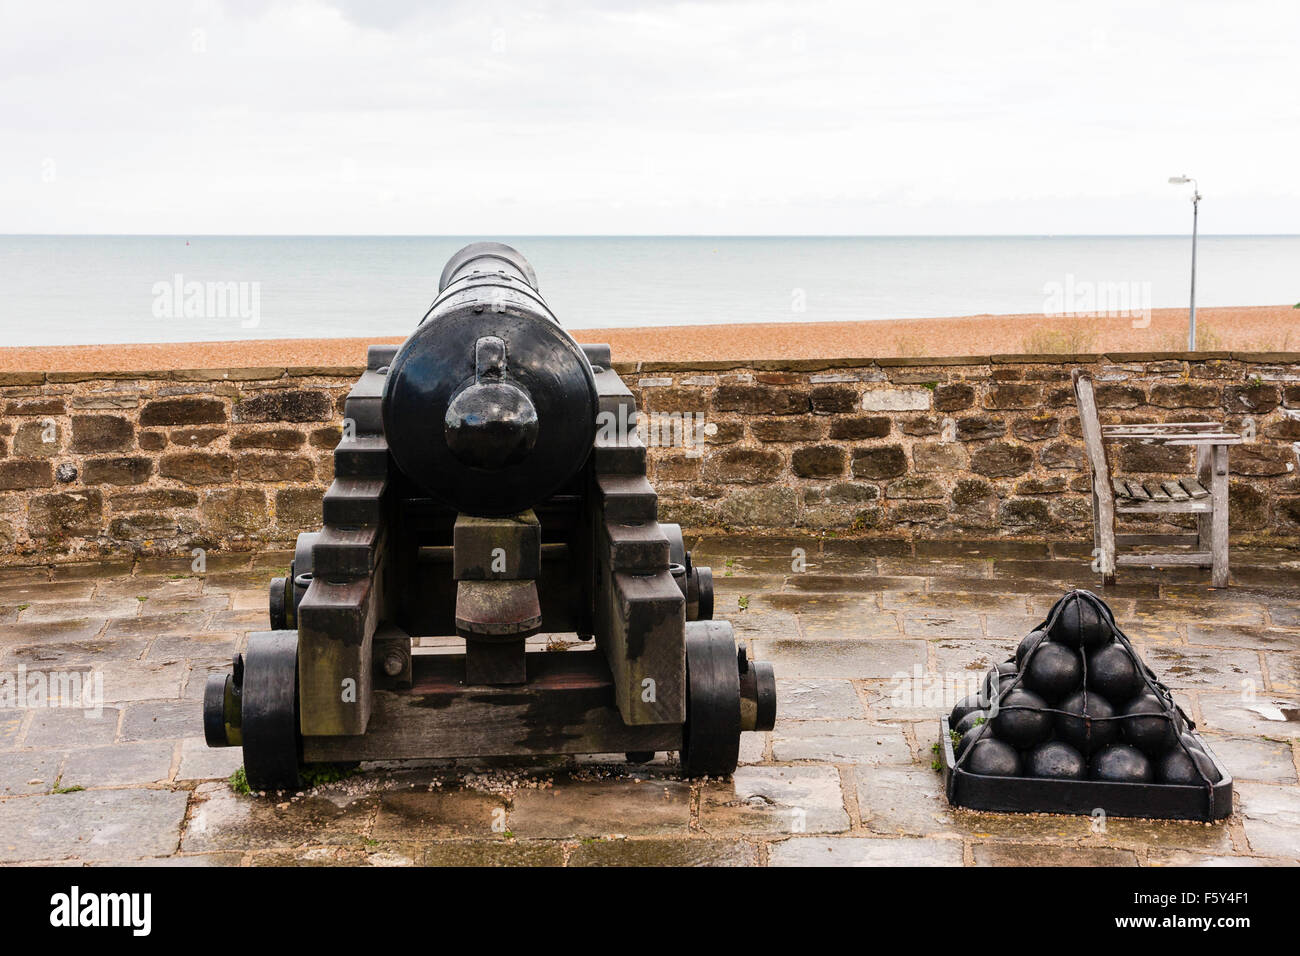 Inghilterra, trattativa Castello Tudor. 32-punded cannon, 'pattern Blomfield gun' sulla parete esterna, sottolineando al mare con la pila di palle di cannone. Pioggia, nuvoloso sk. Foto Stock